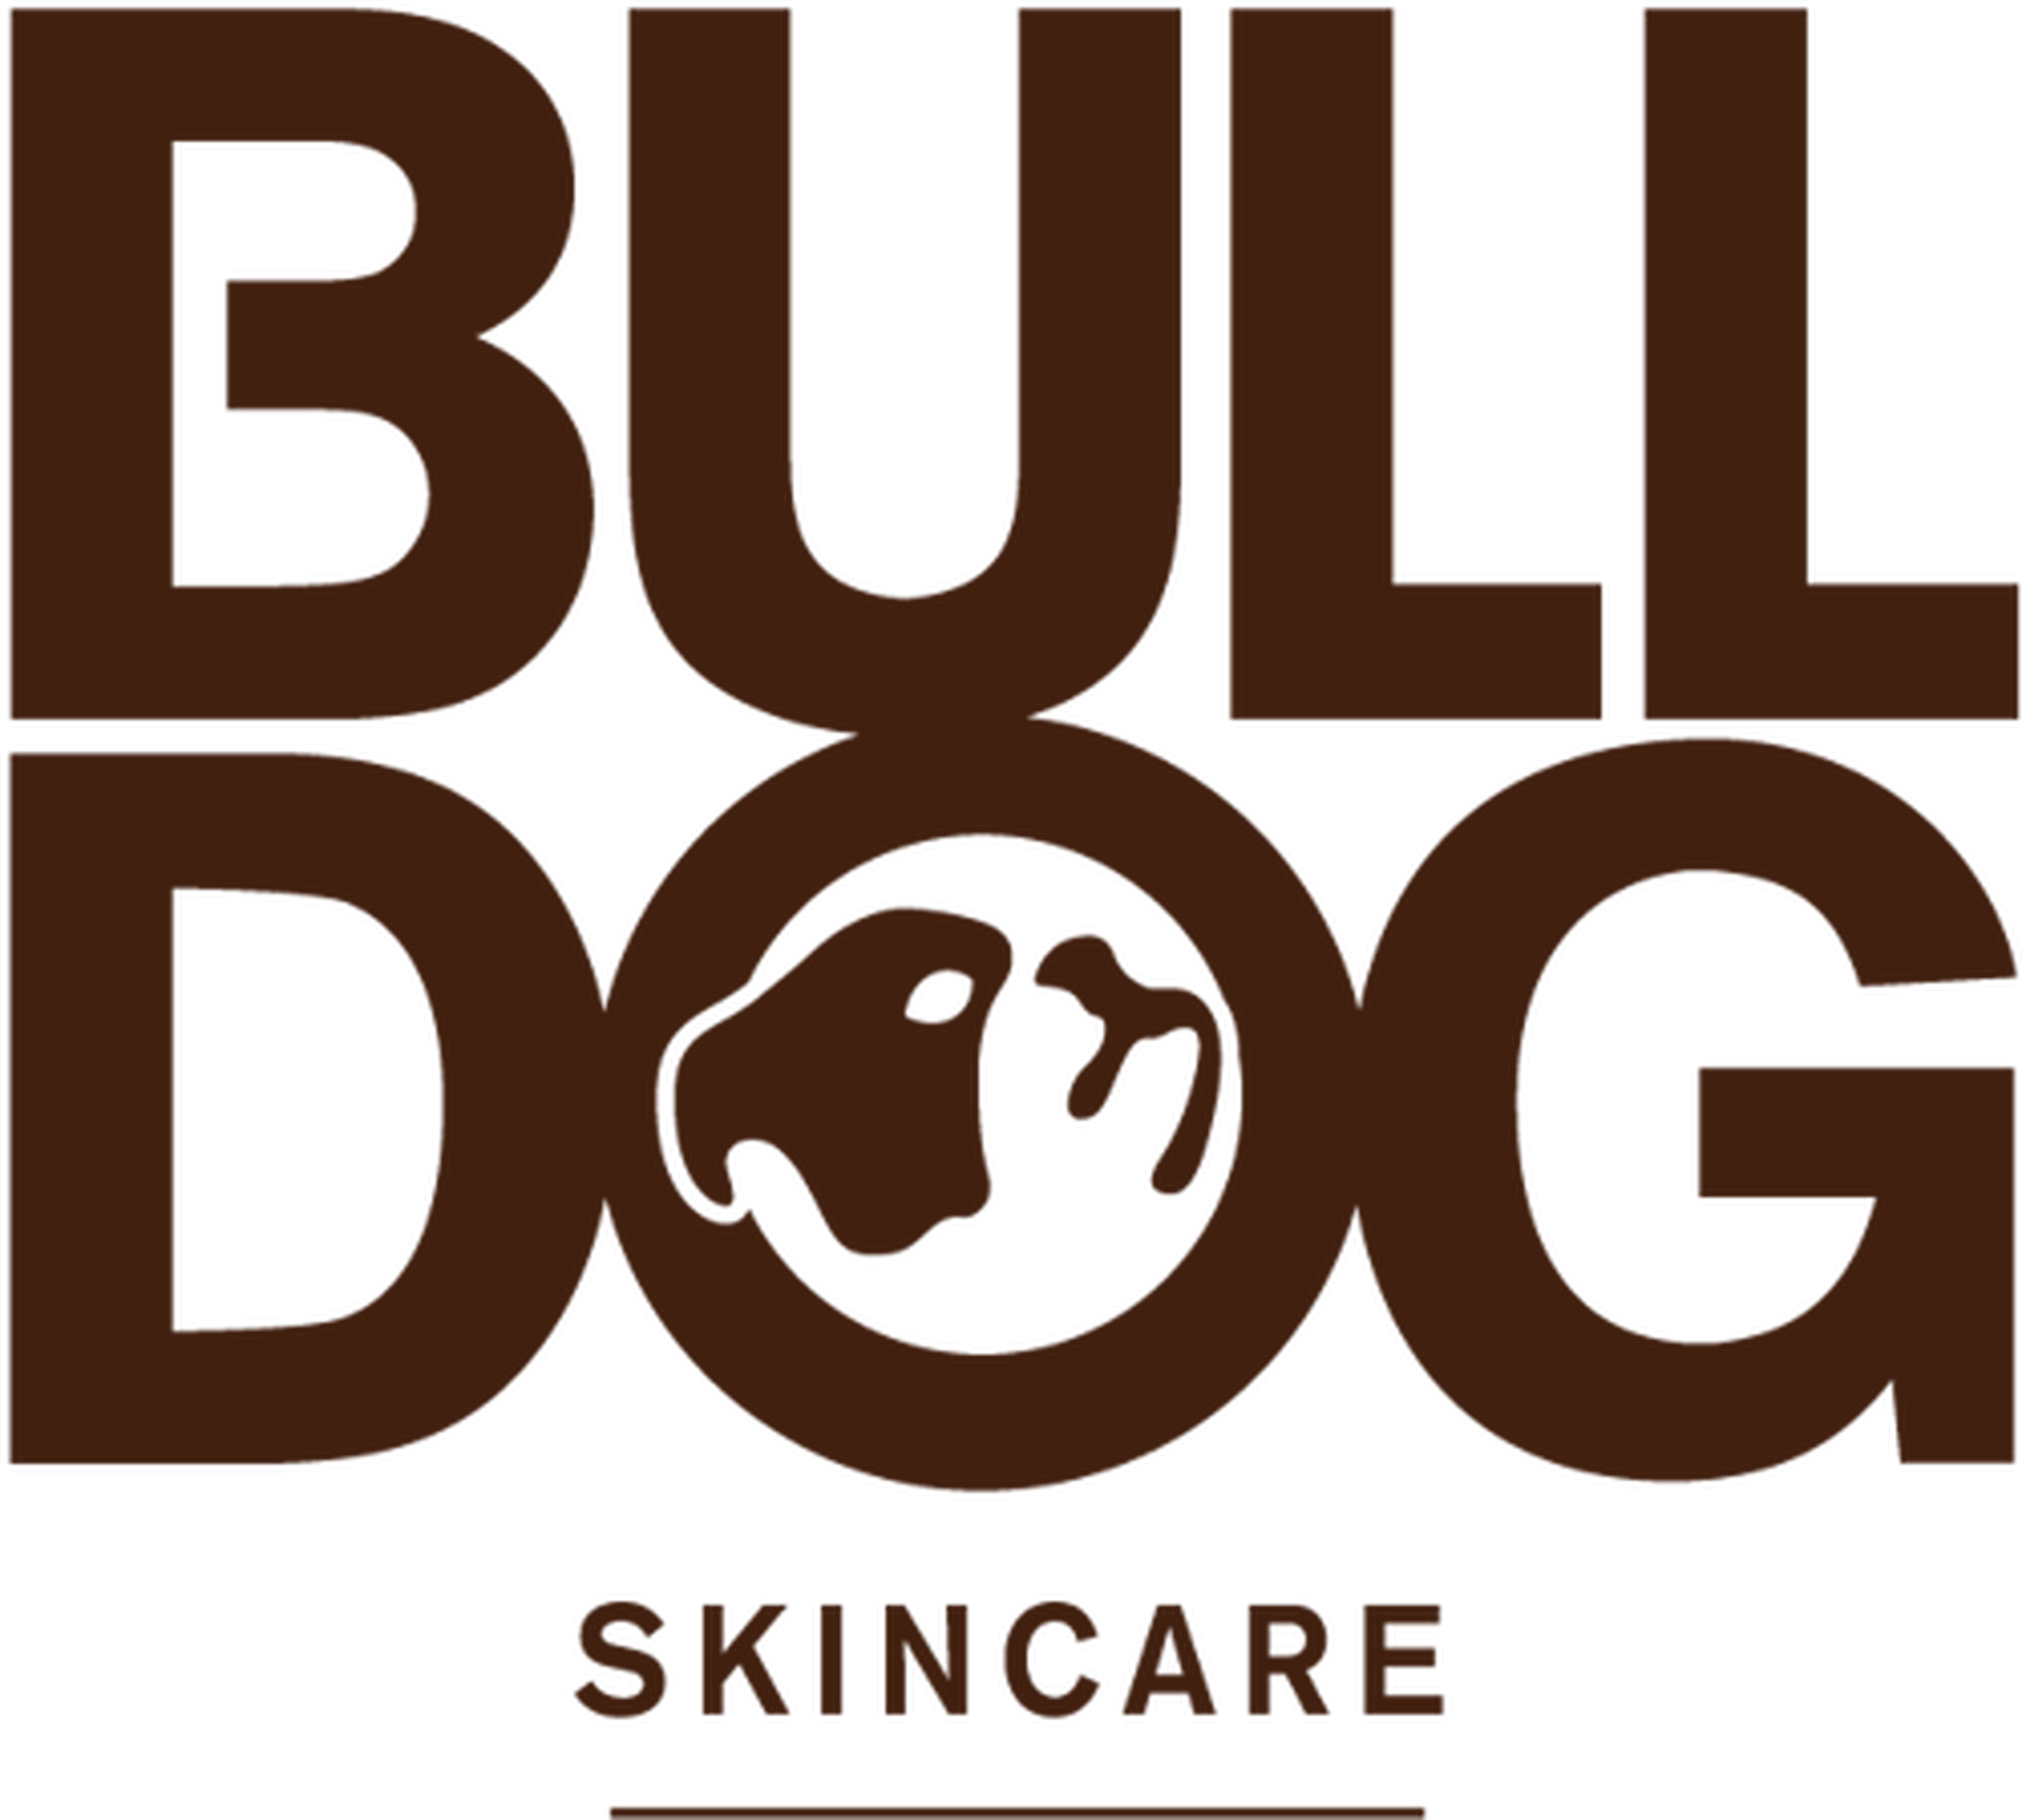 Bulldog logotype